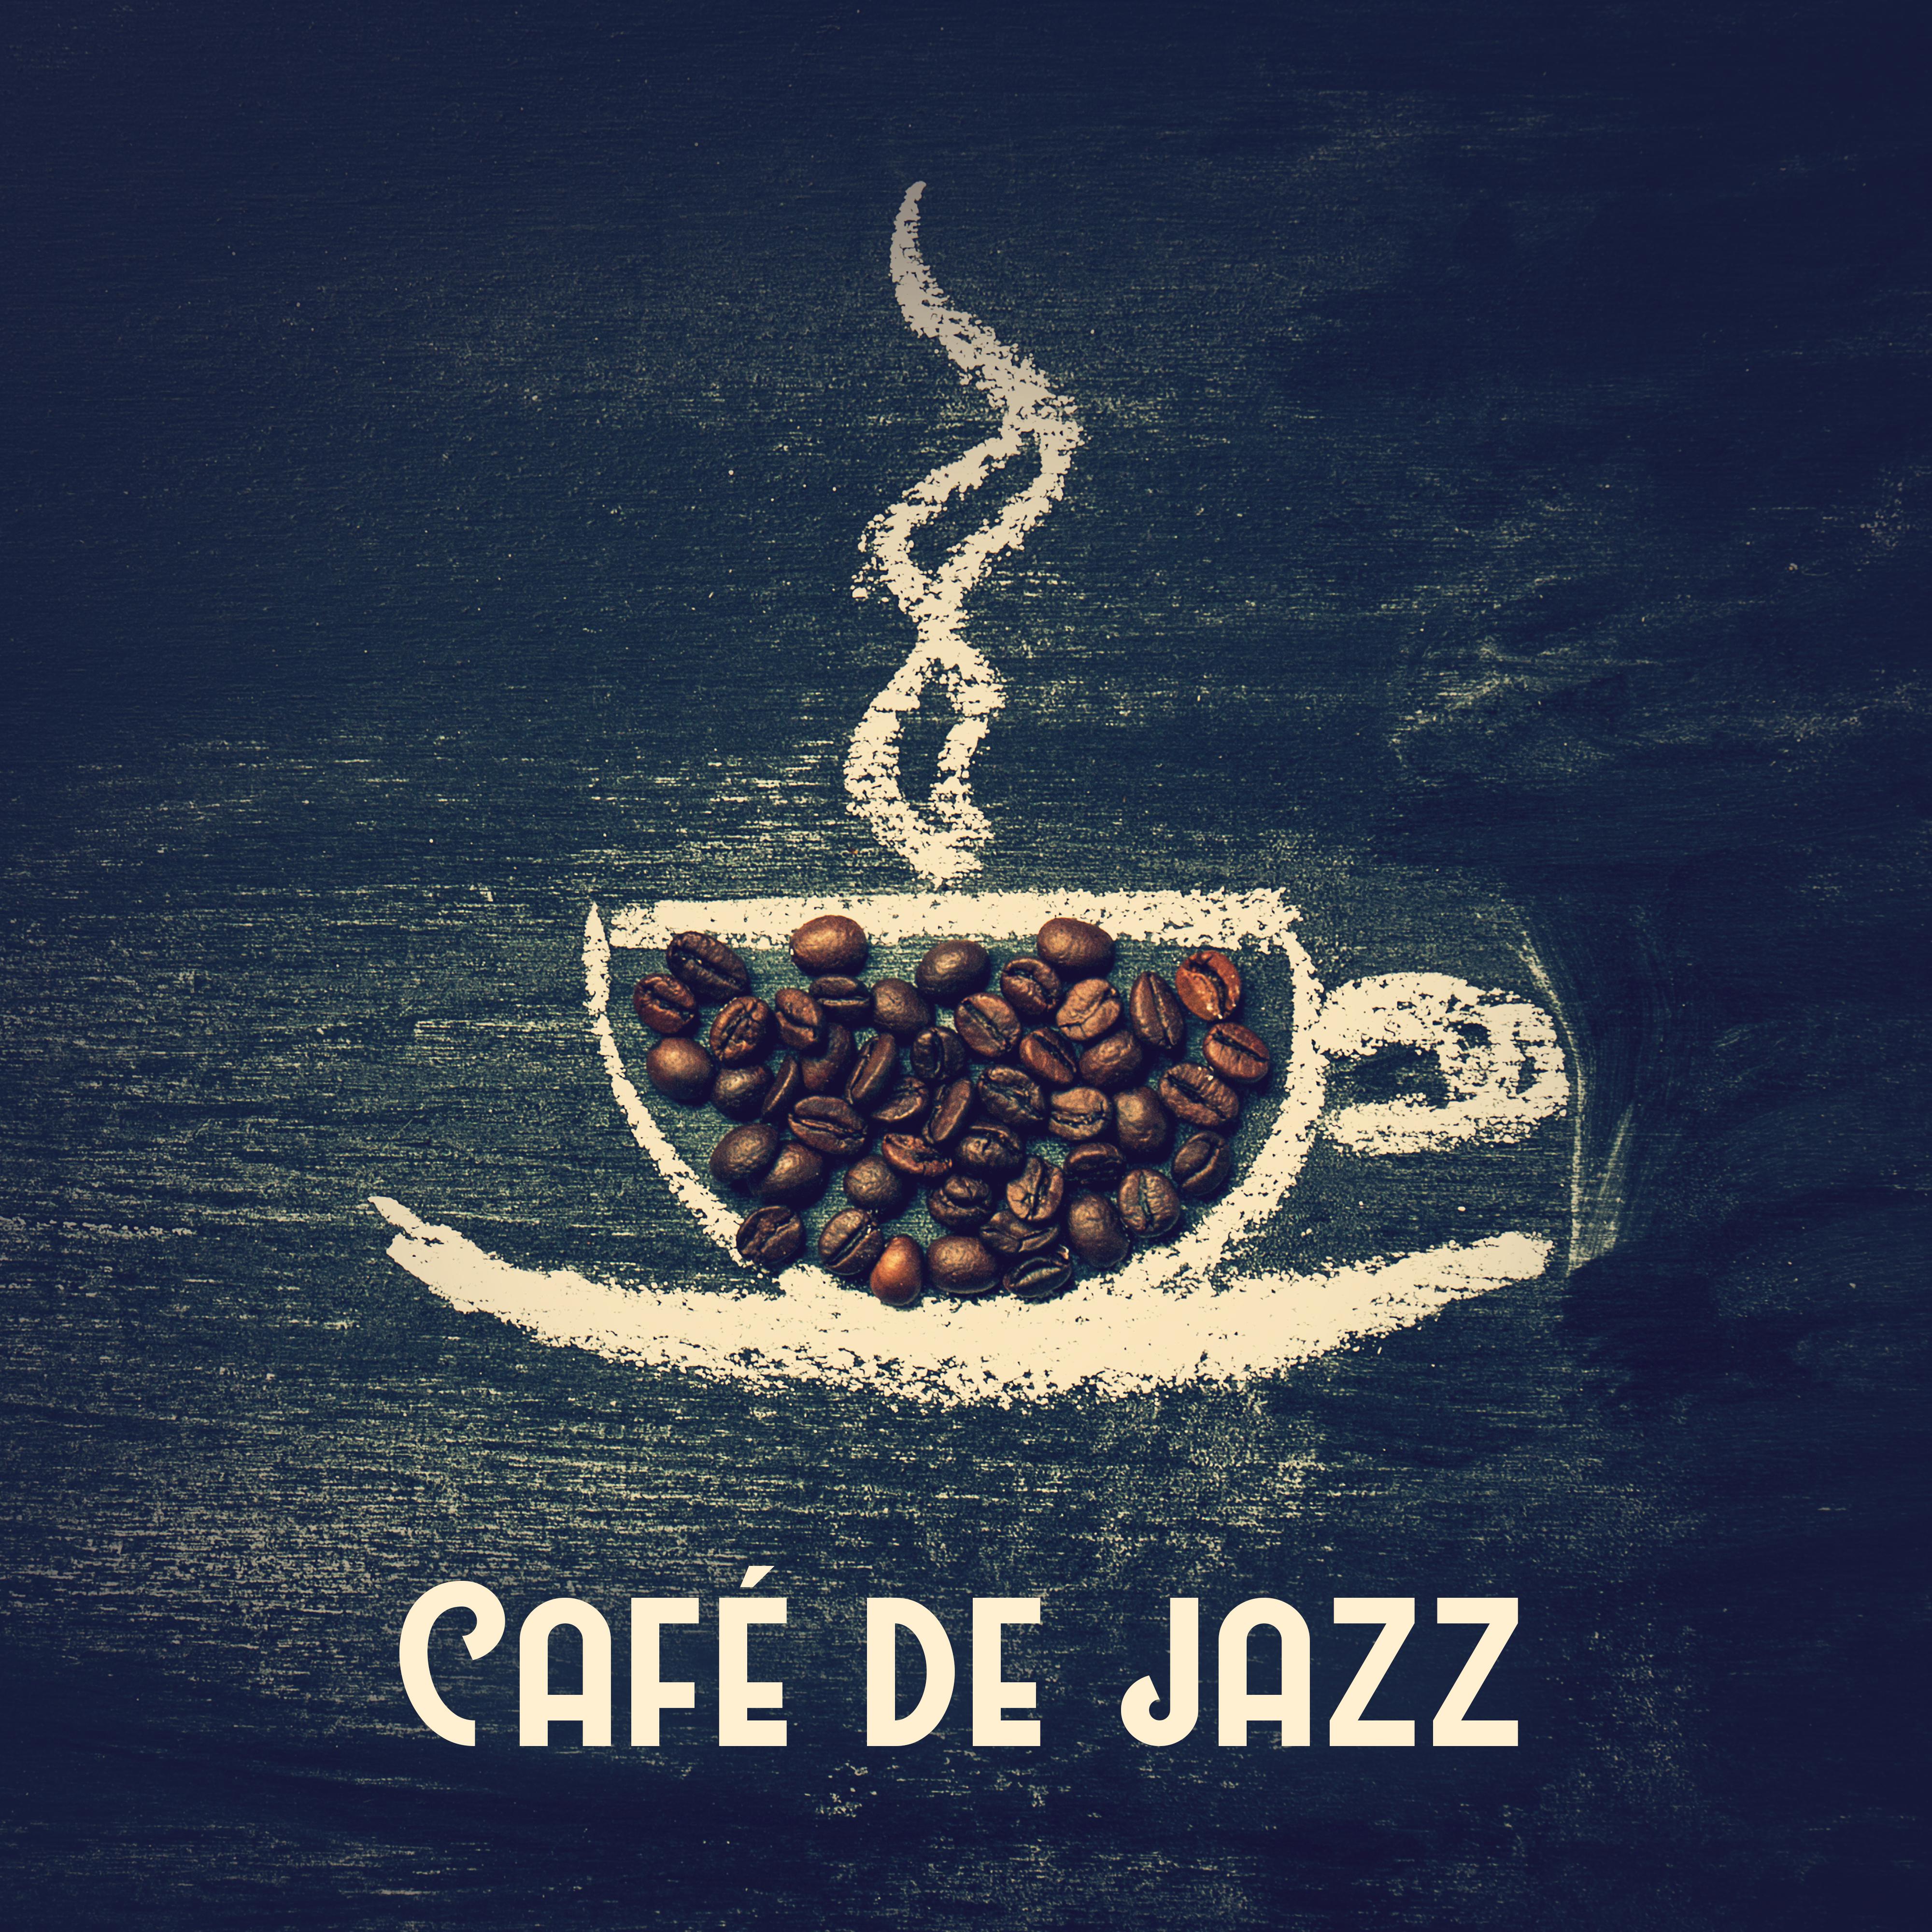 Cafe de jazz